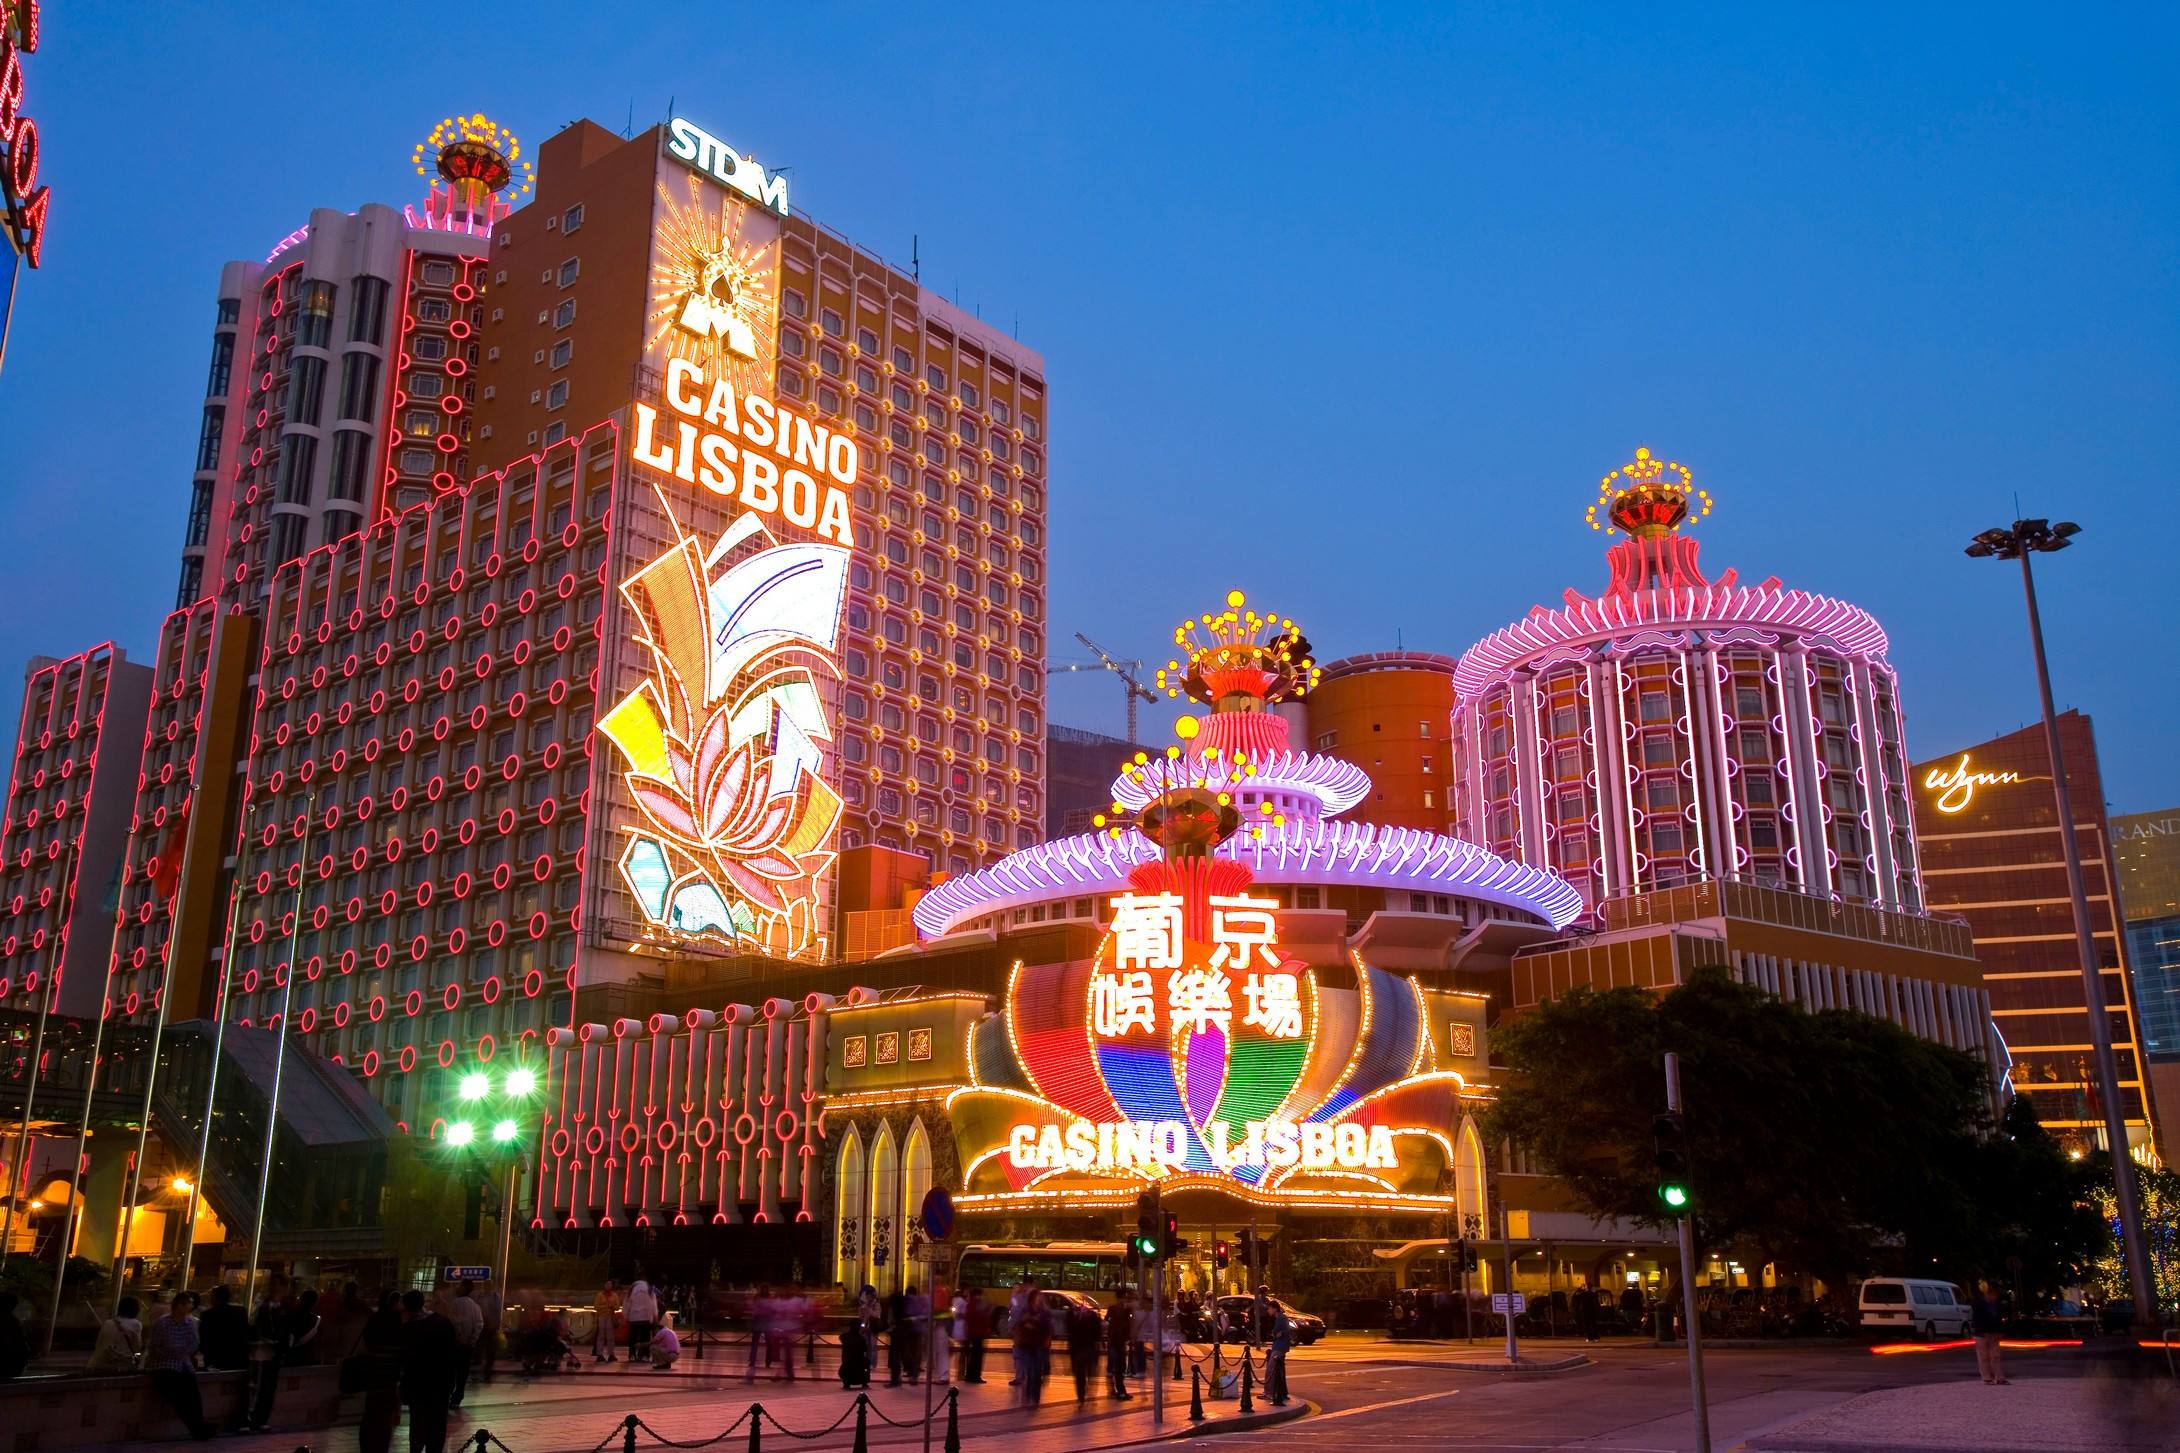 酒店设赌场及角子机娱乐场,由澳门博彩股份有限公司所营运